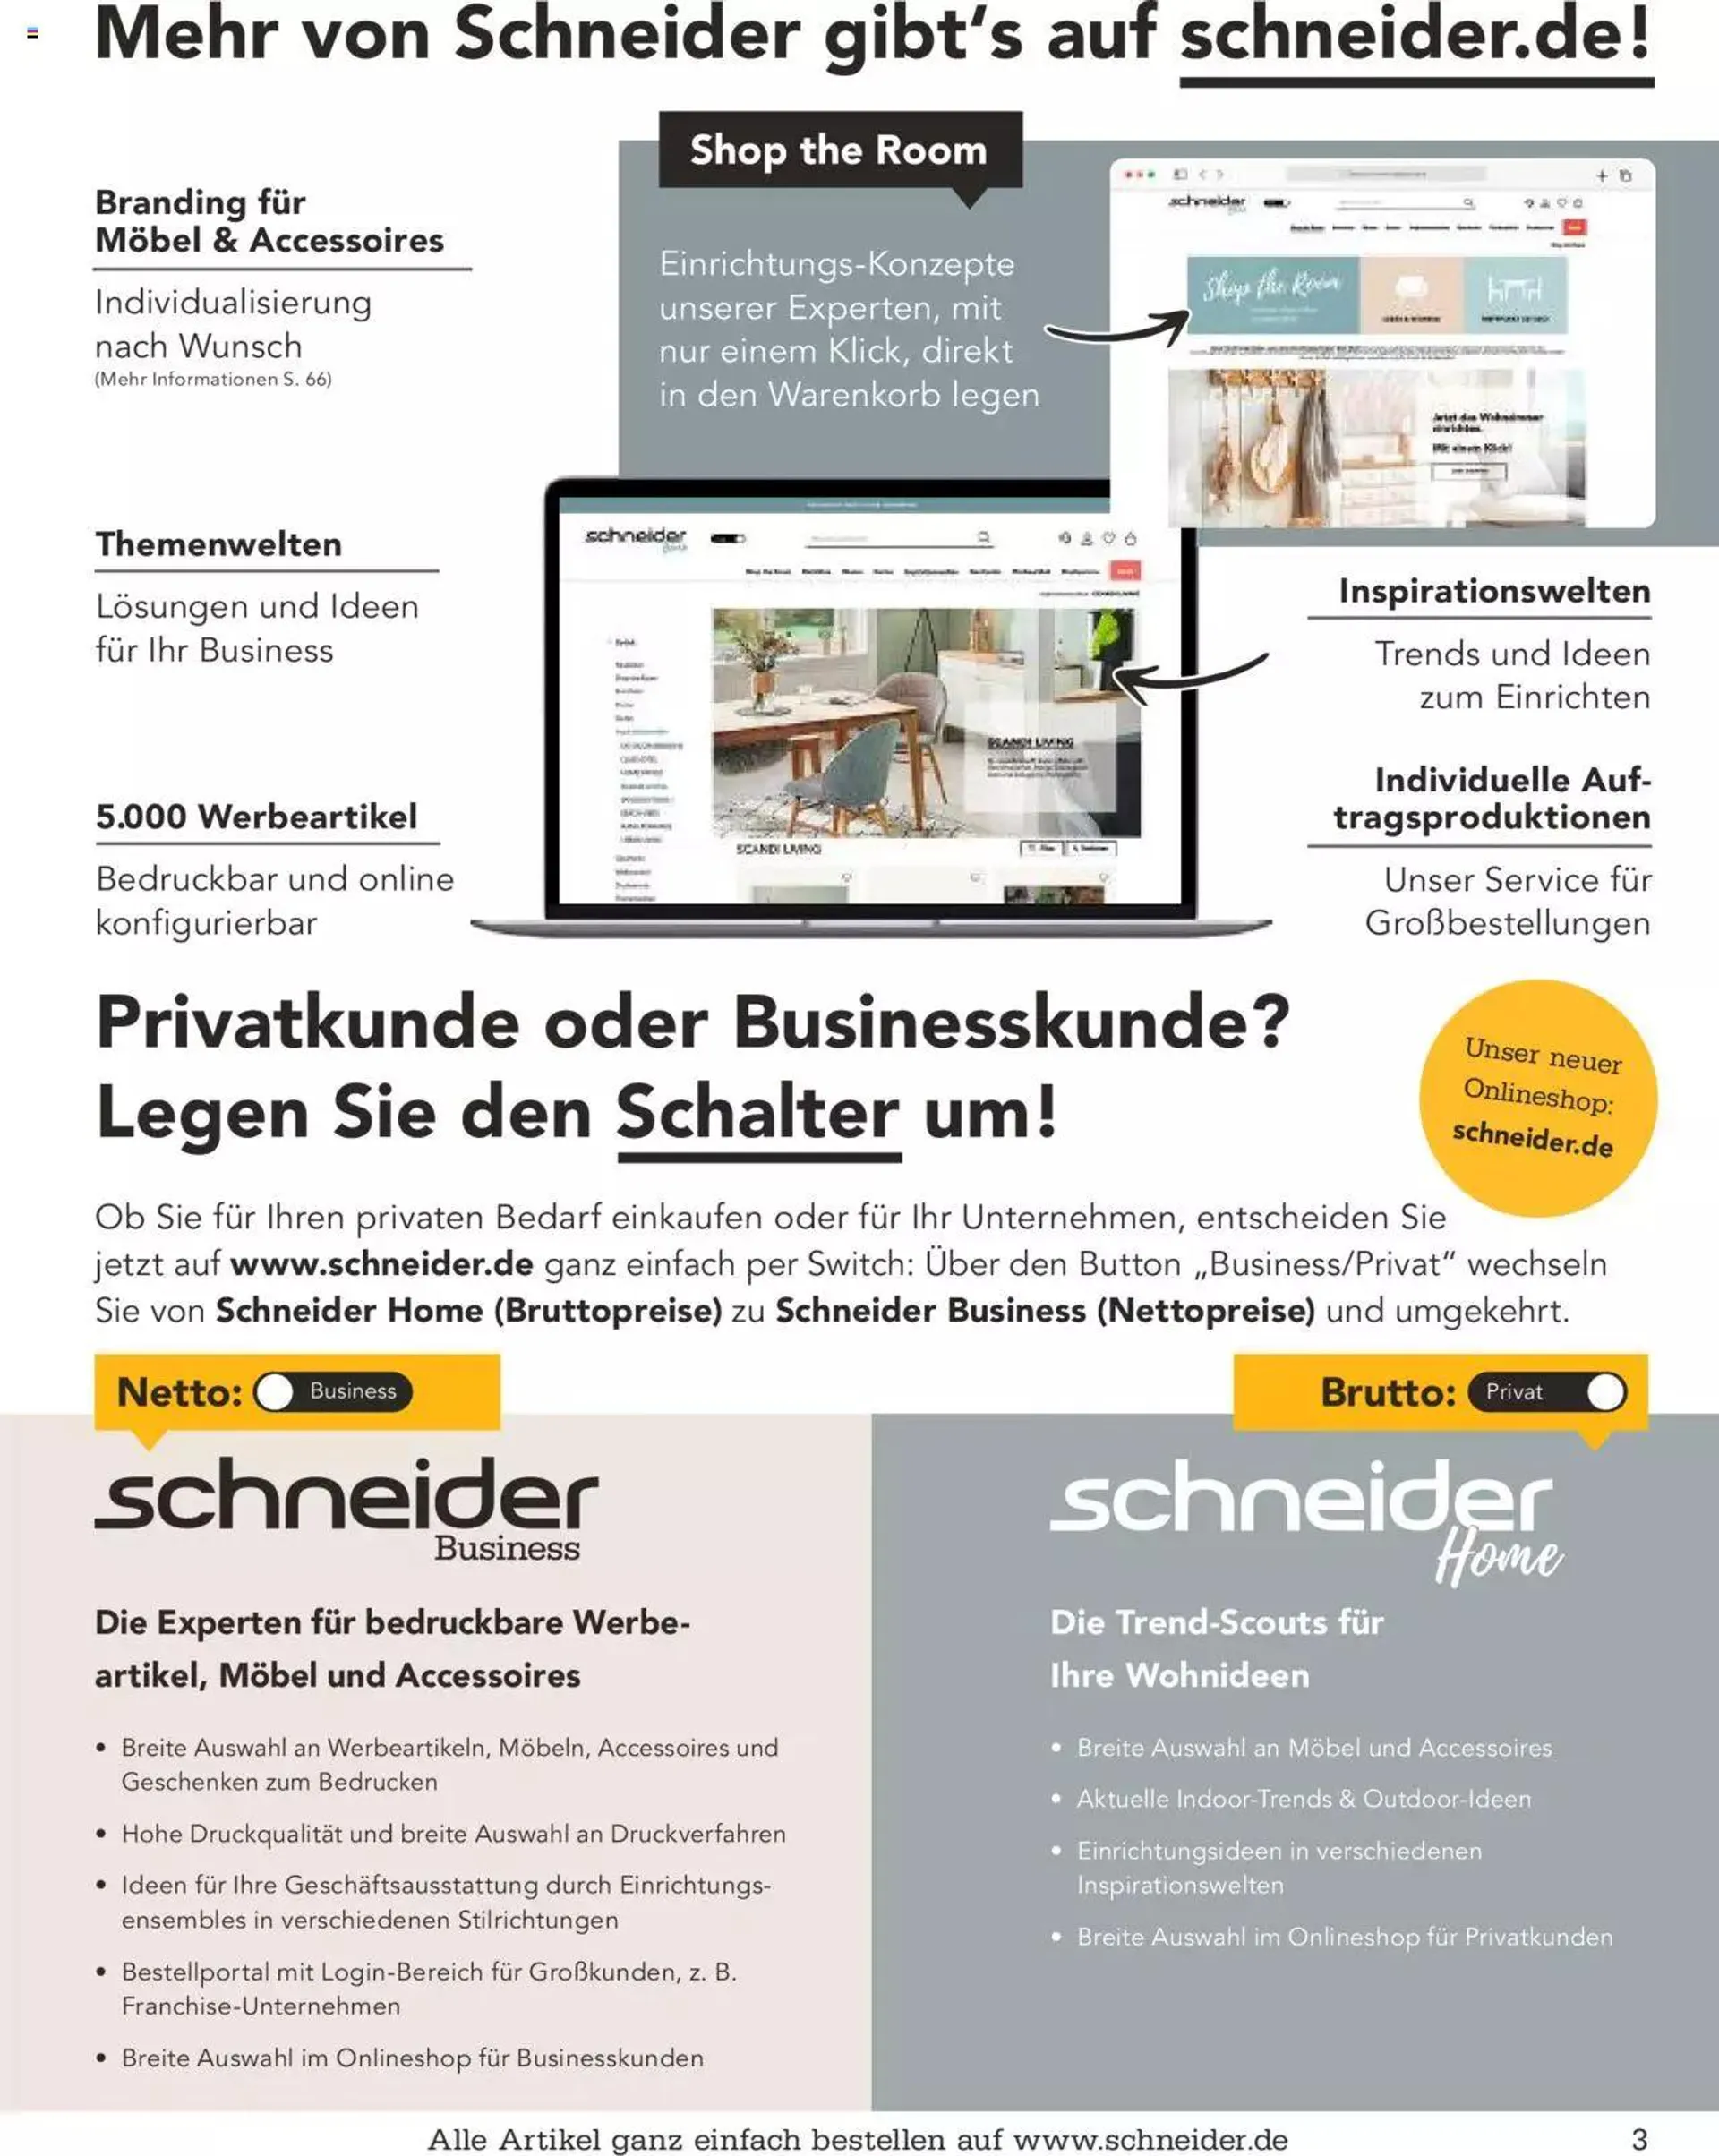 Schneider - Köstlich & kundenfreundlich - 2